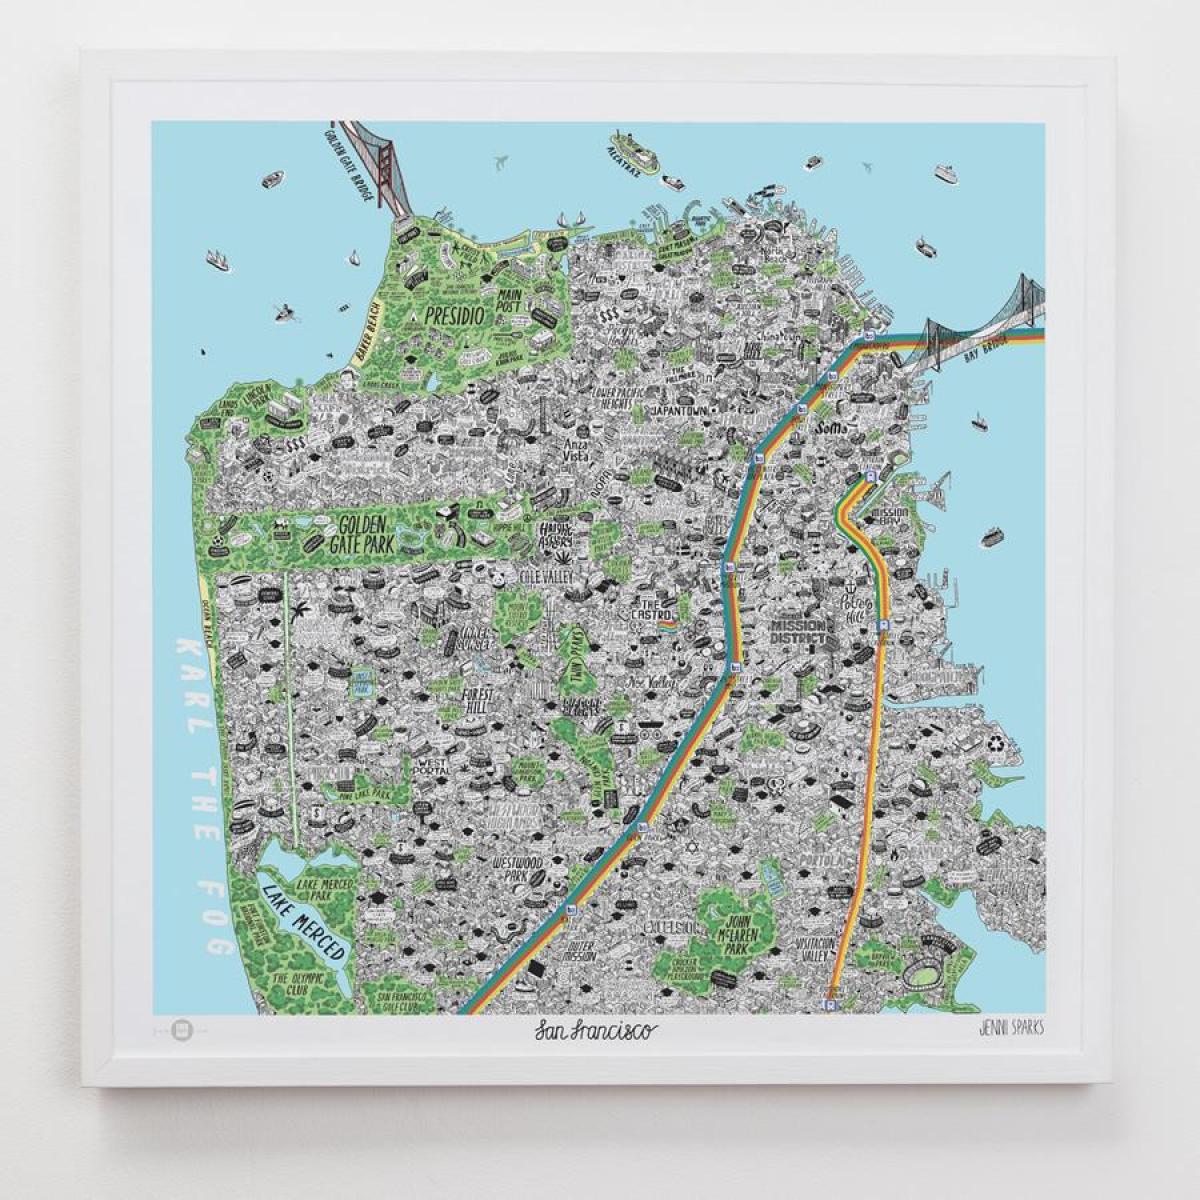 Peta dari San Francisco art